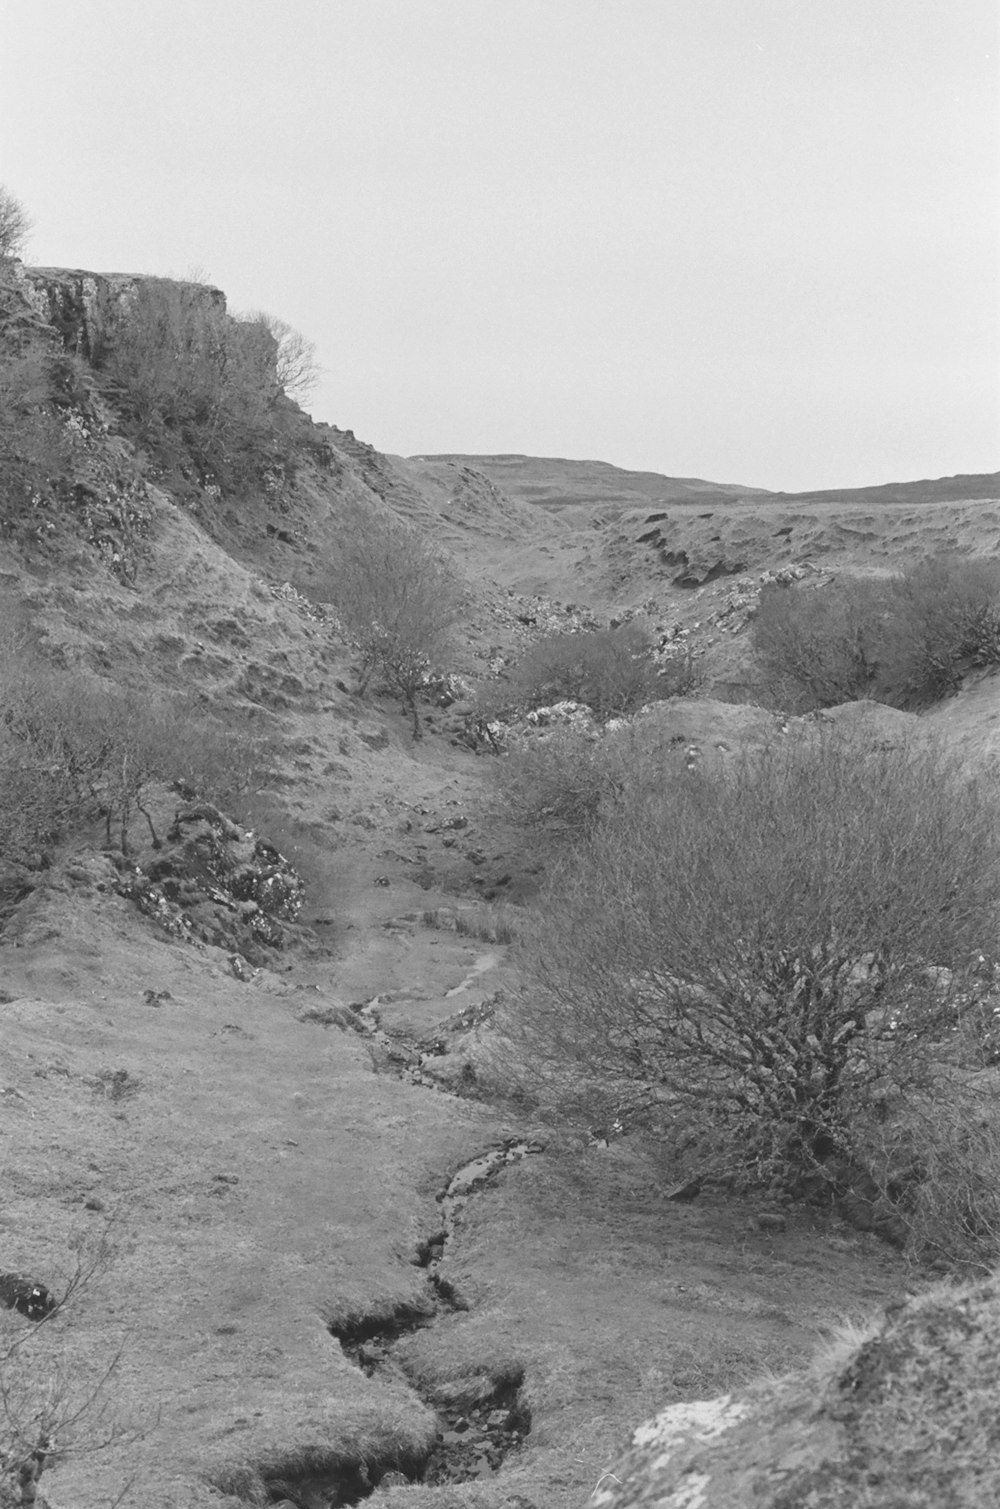 Une photo en noir et blanc d’un paysage désertique